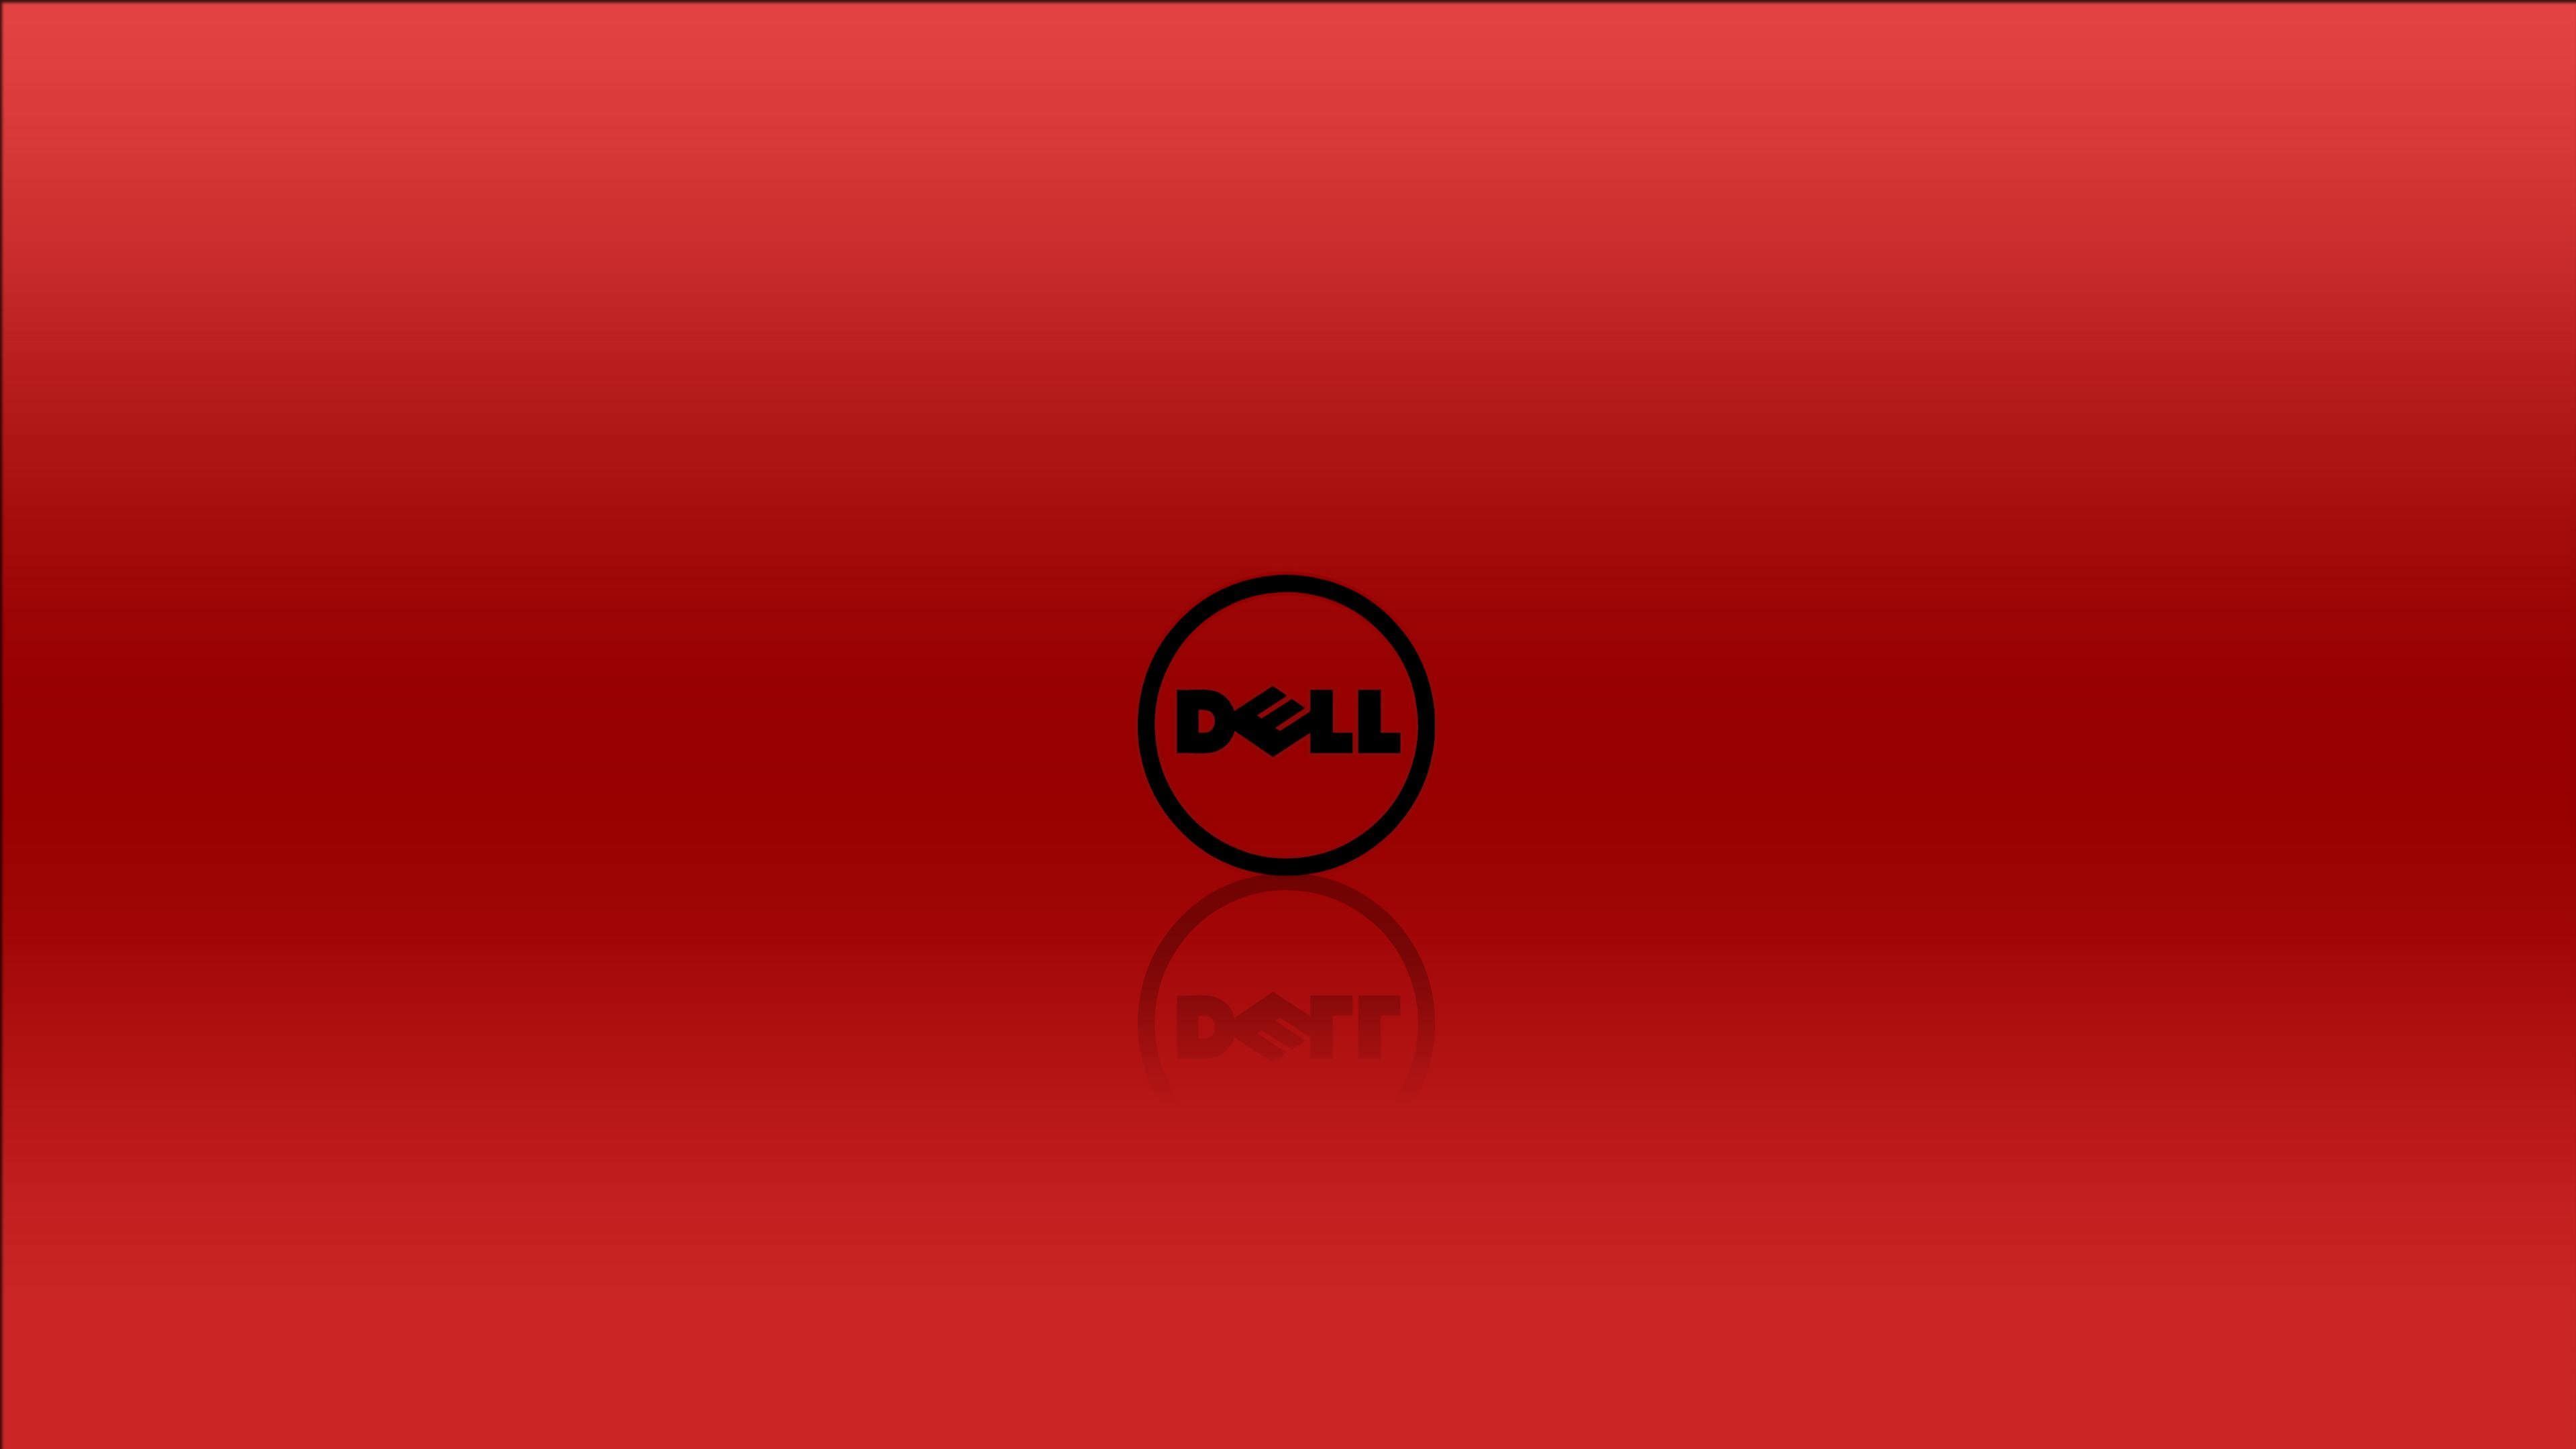 Fondos de pantalla de Dell - FondosMil